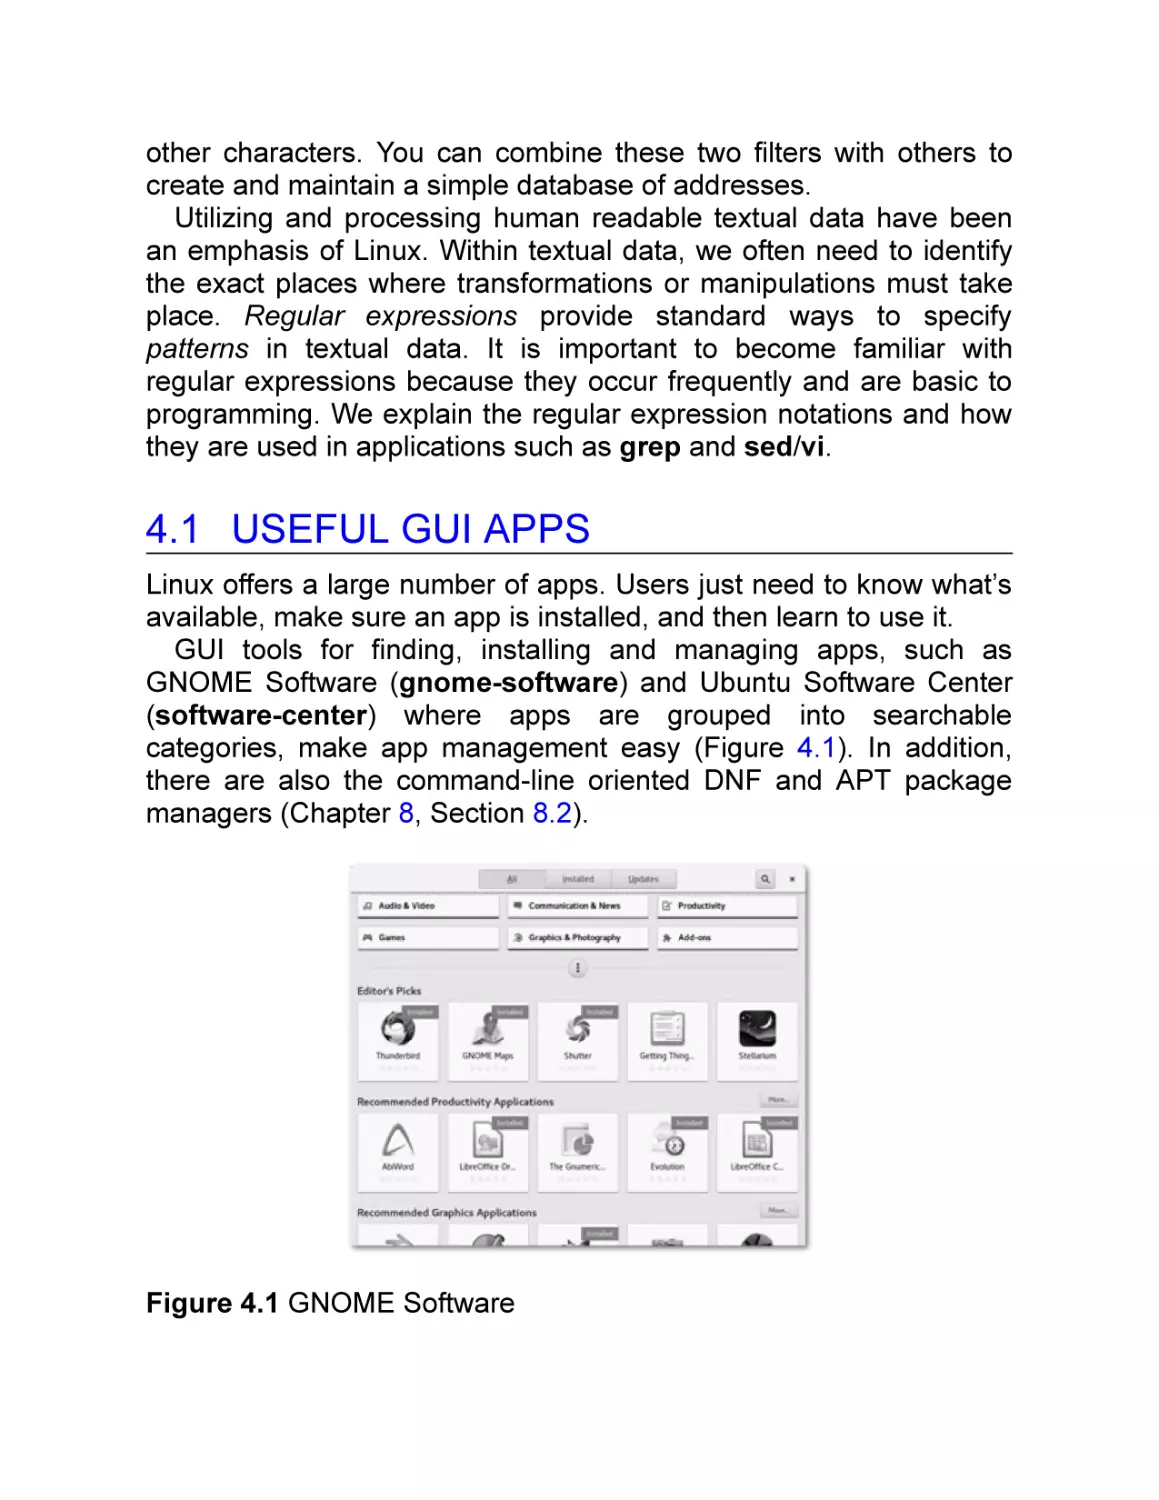 4.1 Useful GUI Apps